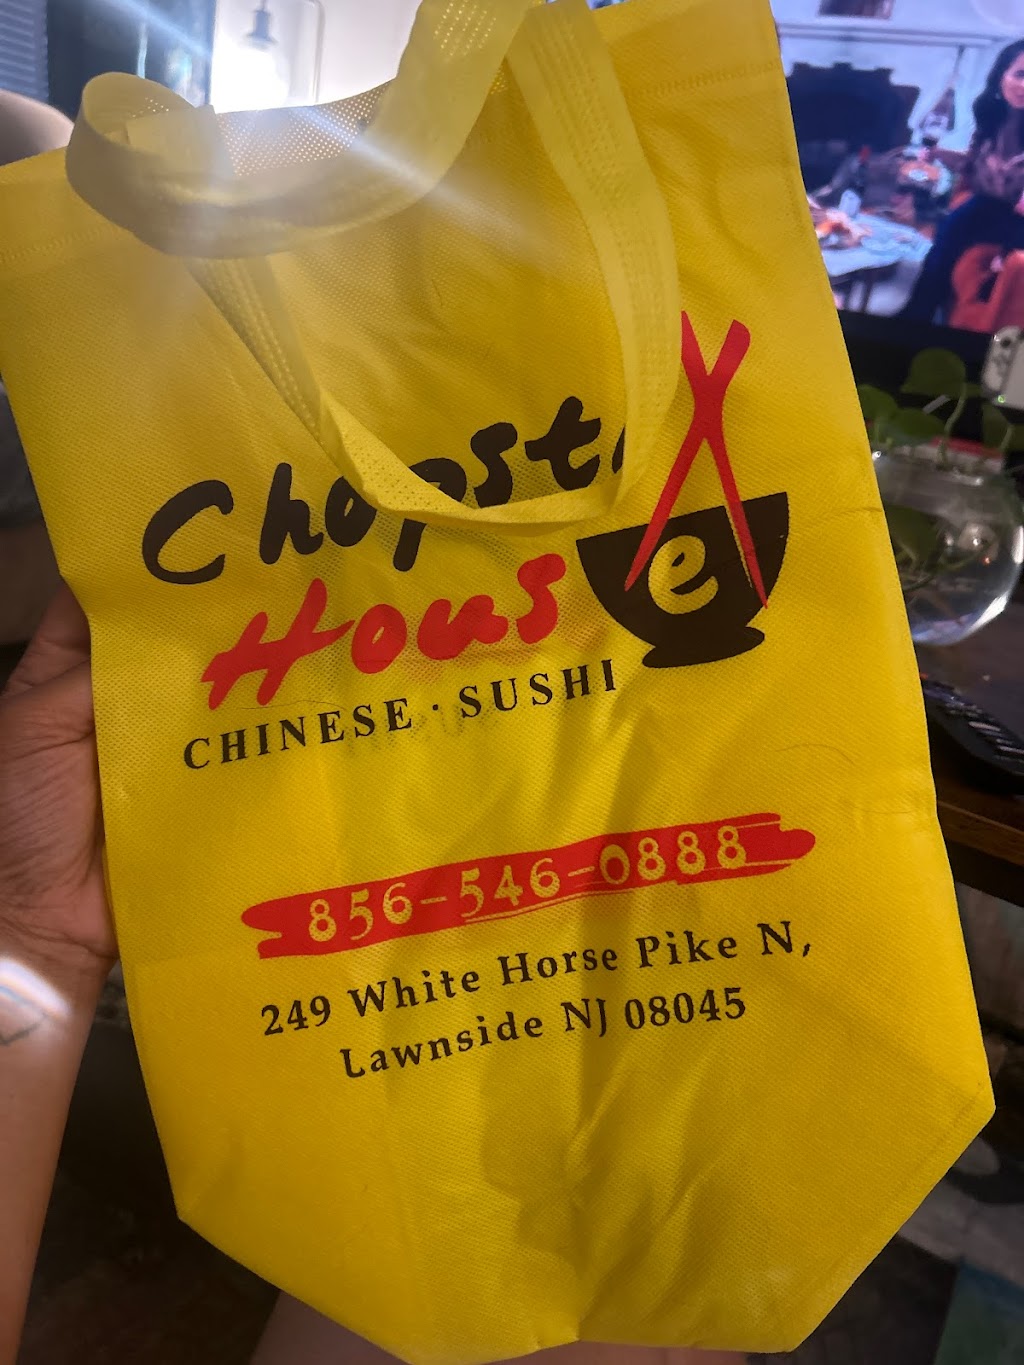 Chopstix House | 249 N White Horse Pike Ste A, Lawnside, NJ 08045 | Phone: (856) 546-0888